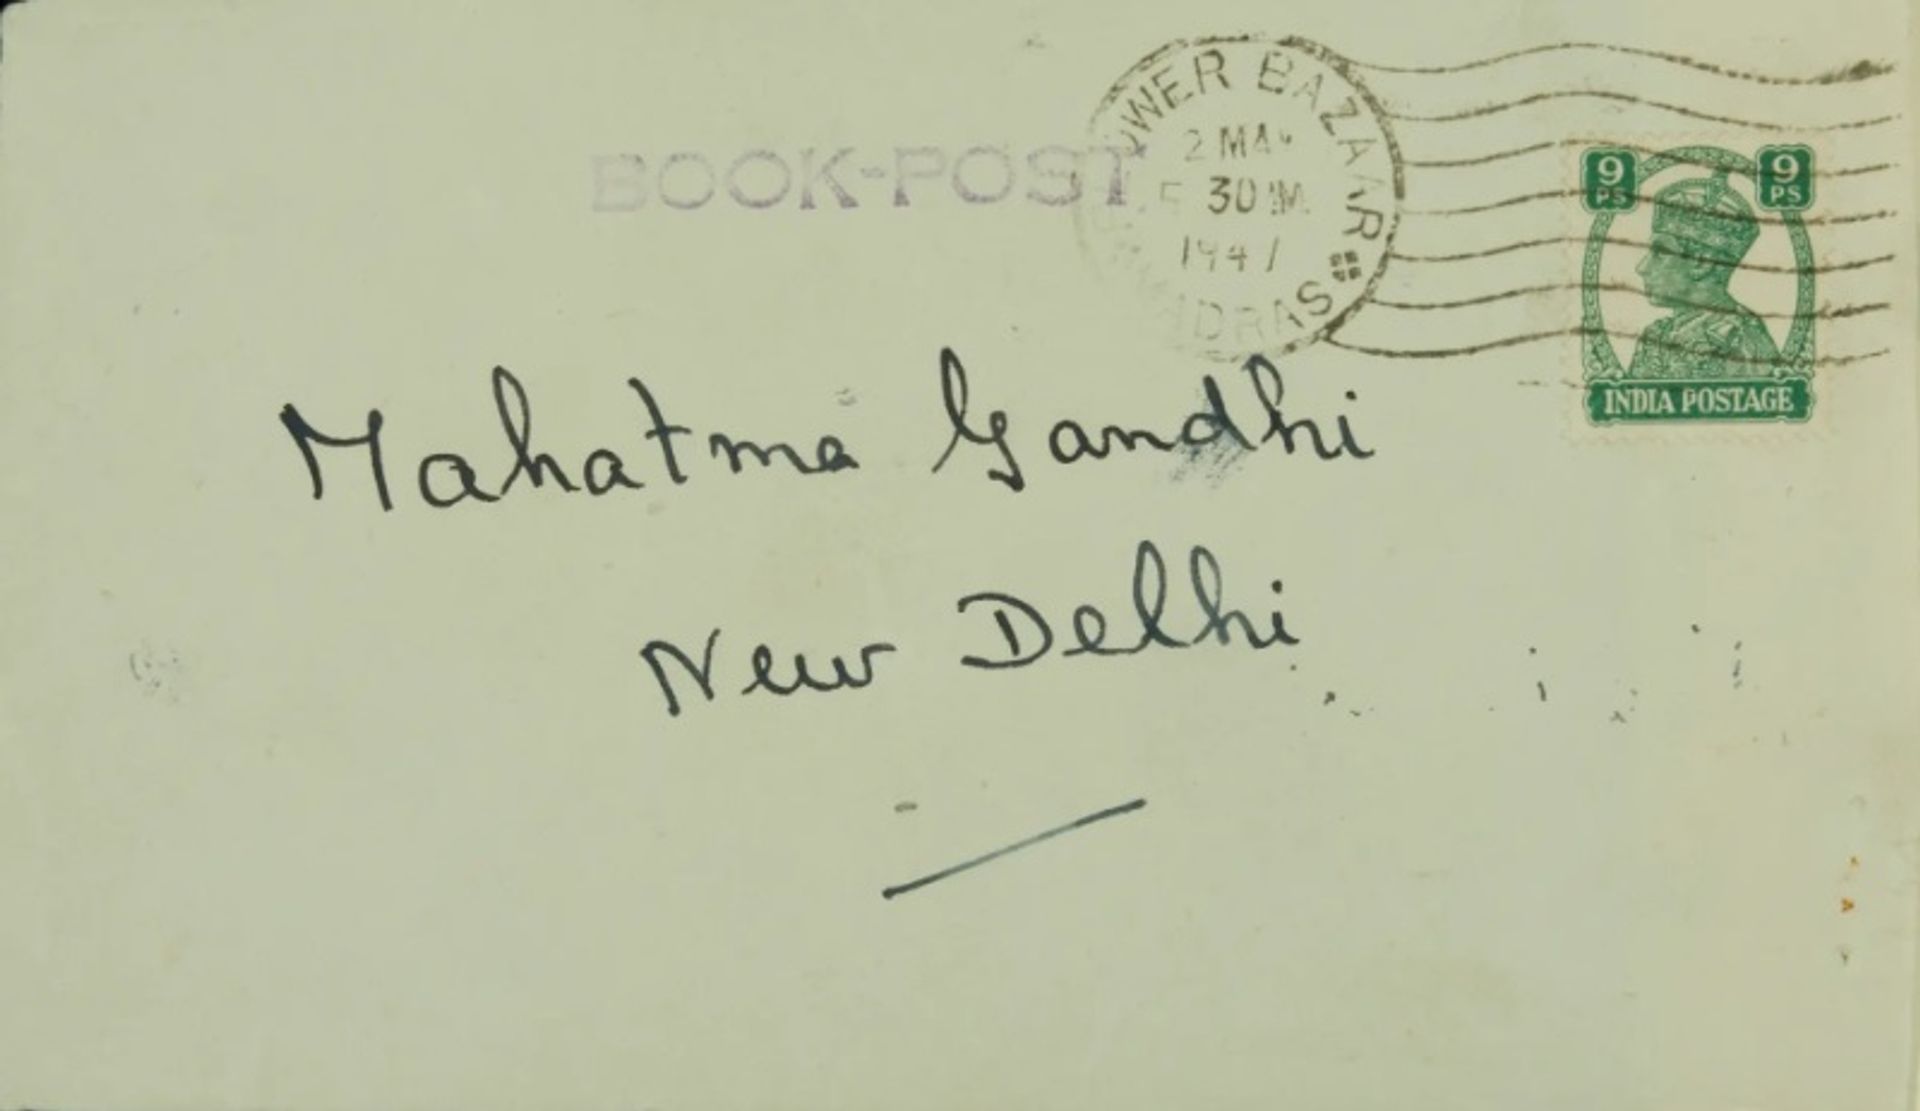 חמישה מכתבים שכתב גנדי ללורד מאונטבאטן שמוחזקים בארכיון מאונטבאטן באוניברסיטת סאות'המפטון יוצגו בגלריה ג'ון הנסארד, להיררכיות סבוכות

באדיבות גלריית ג'ון הנסארד